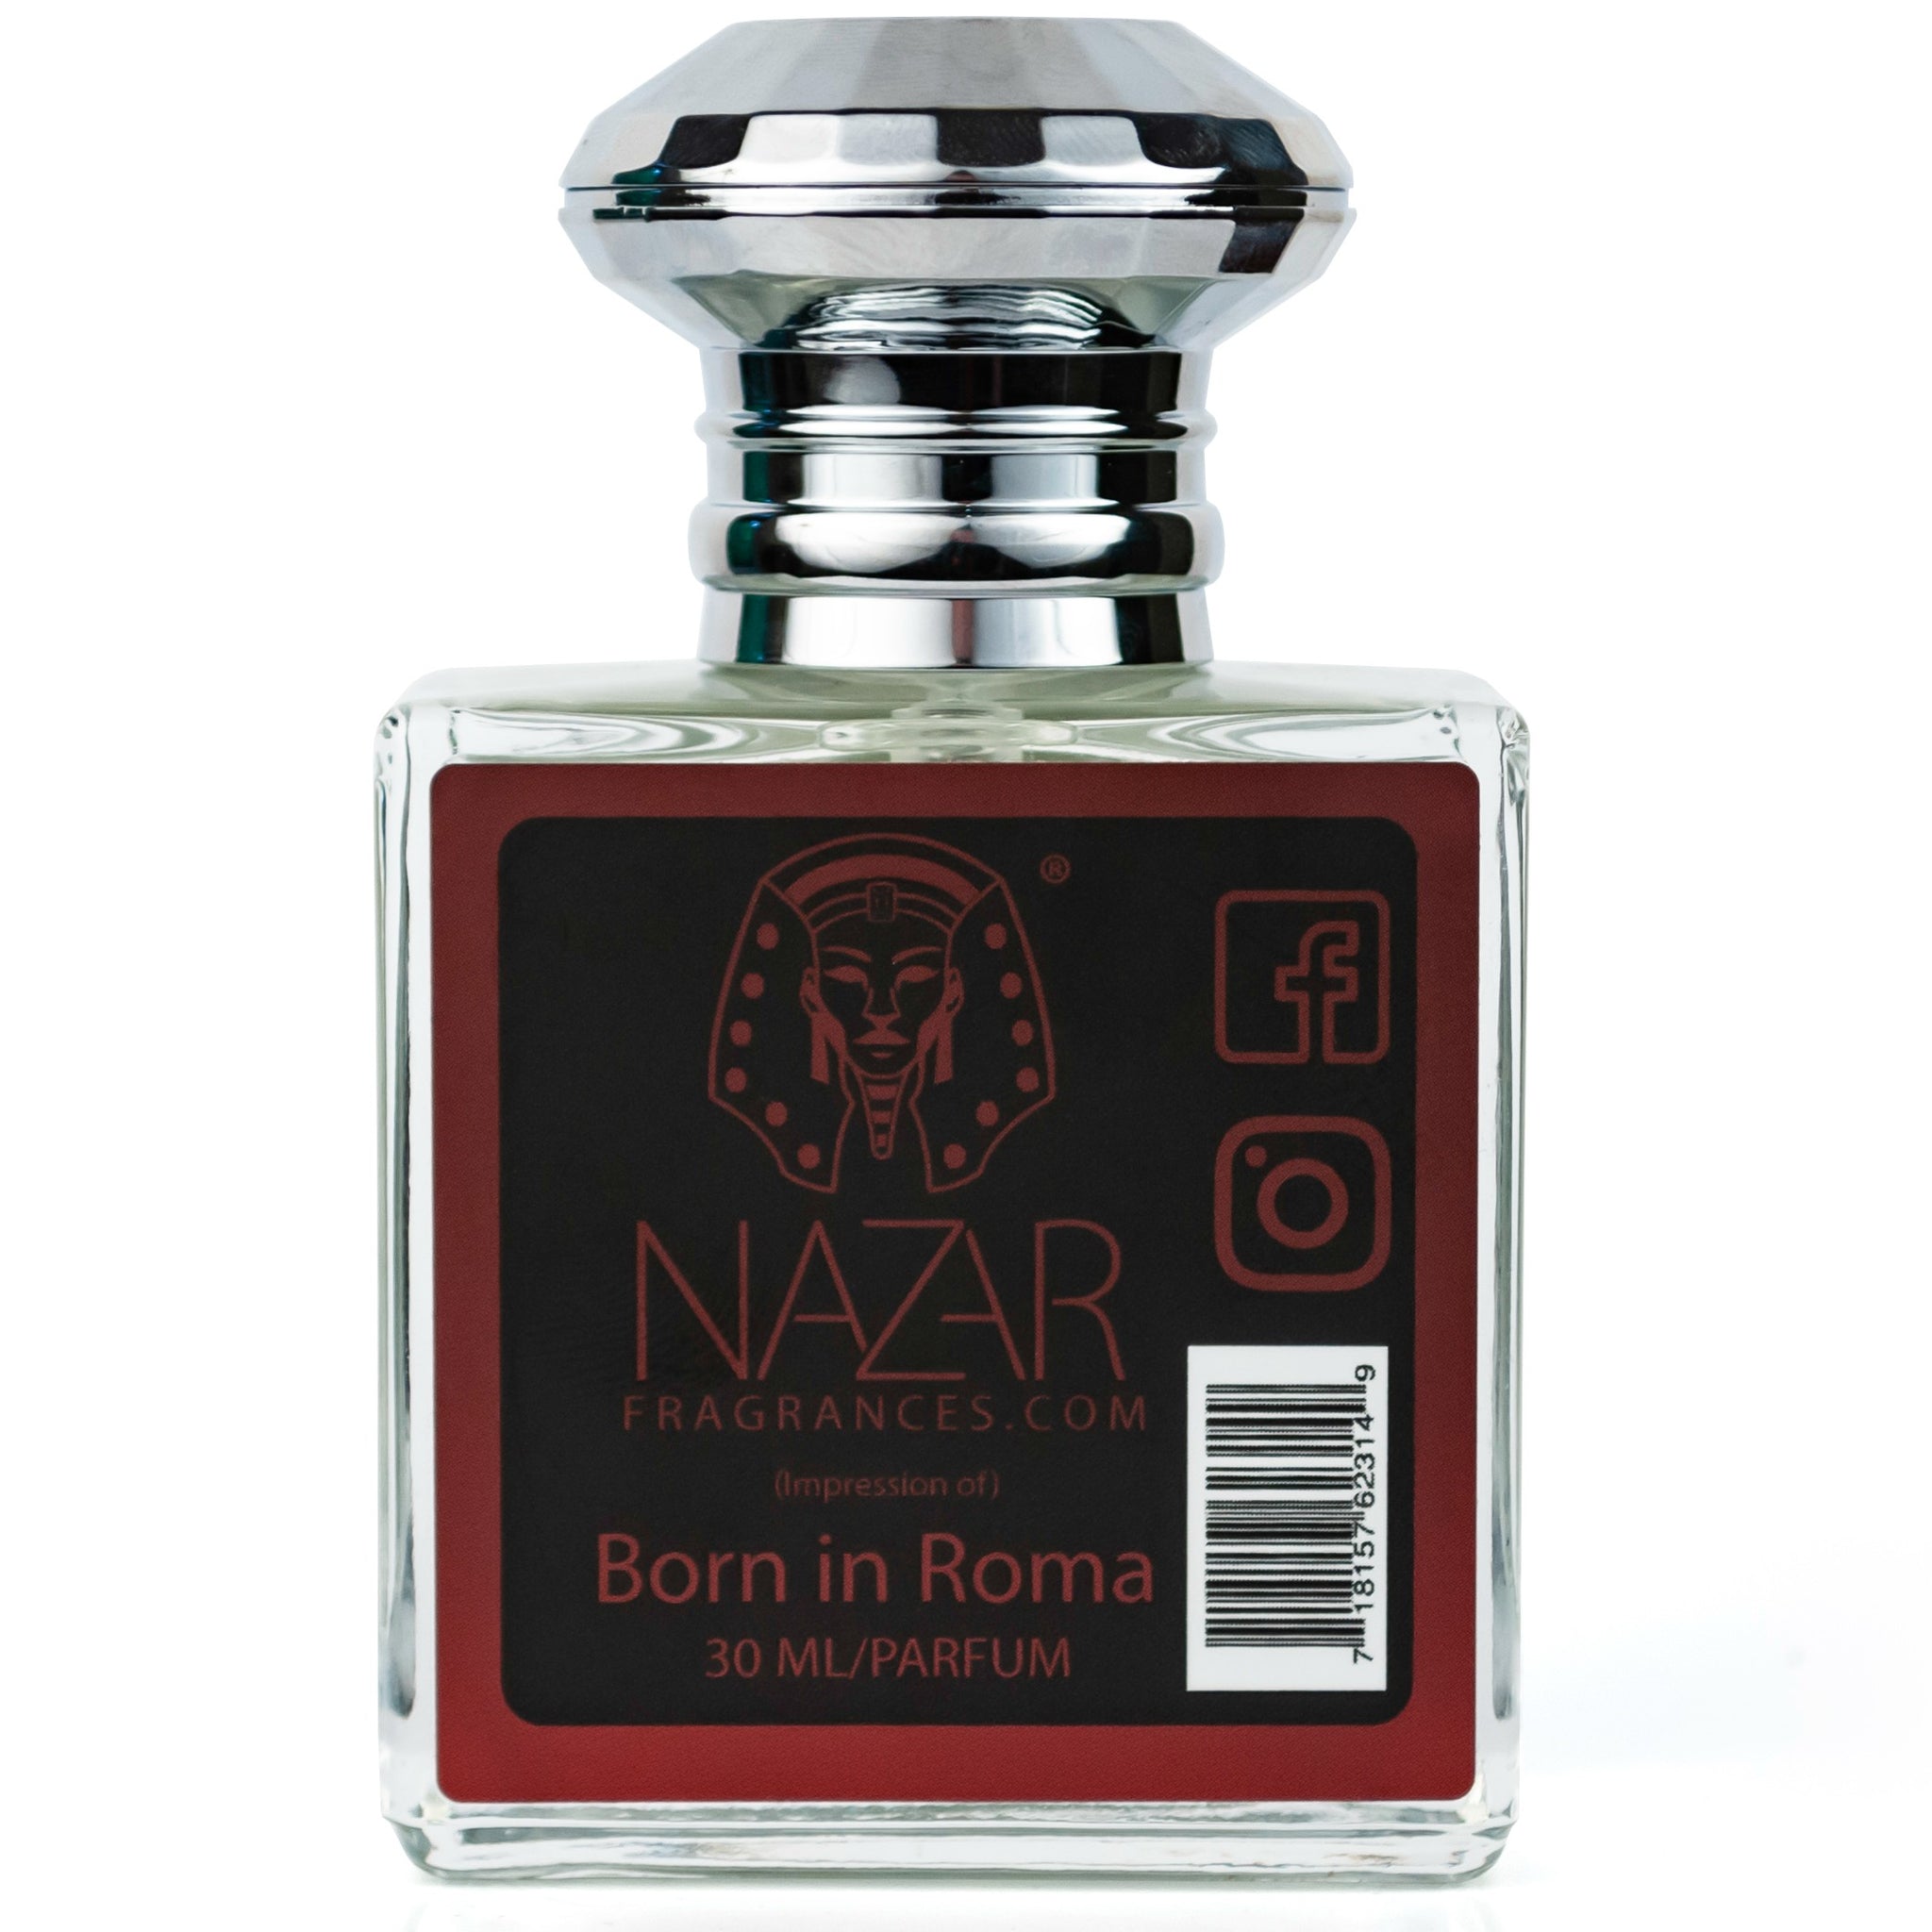 *Impression of Born In Roma (M)